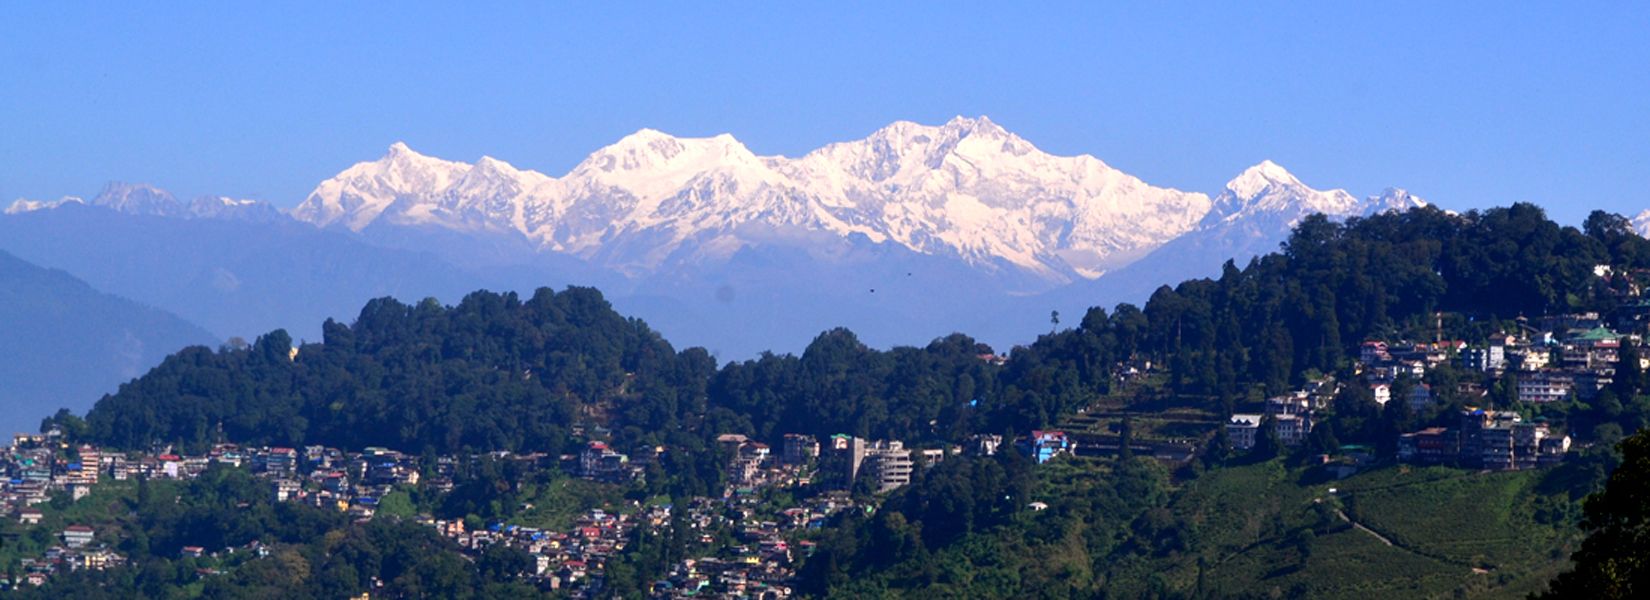 Day Tours in Darjeeling